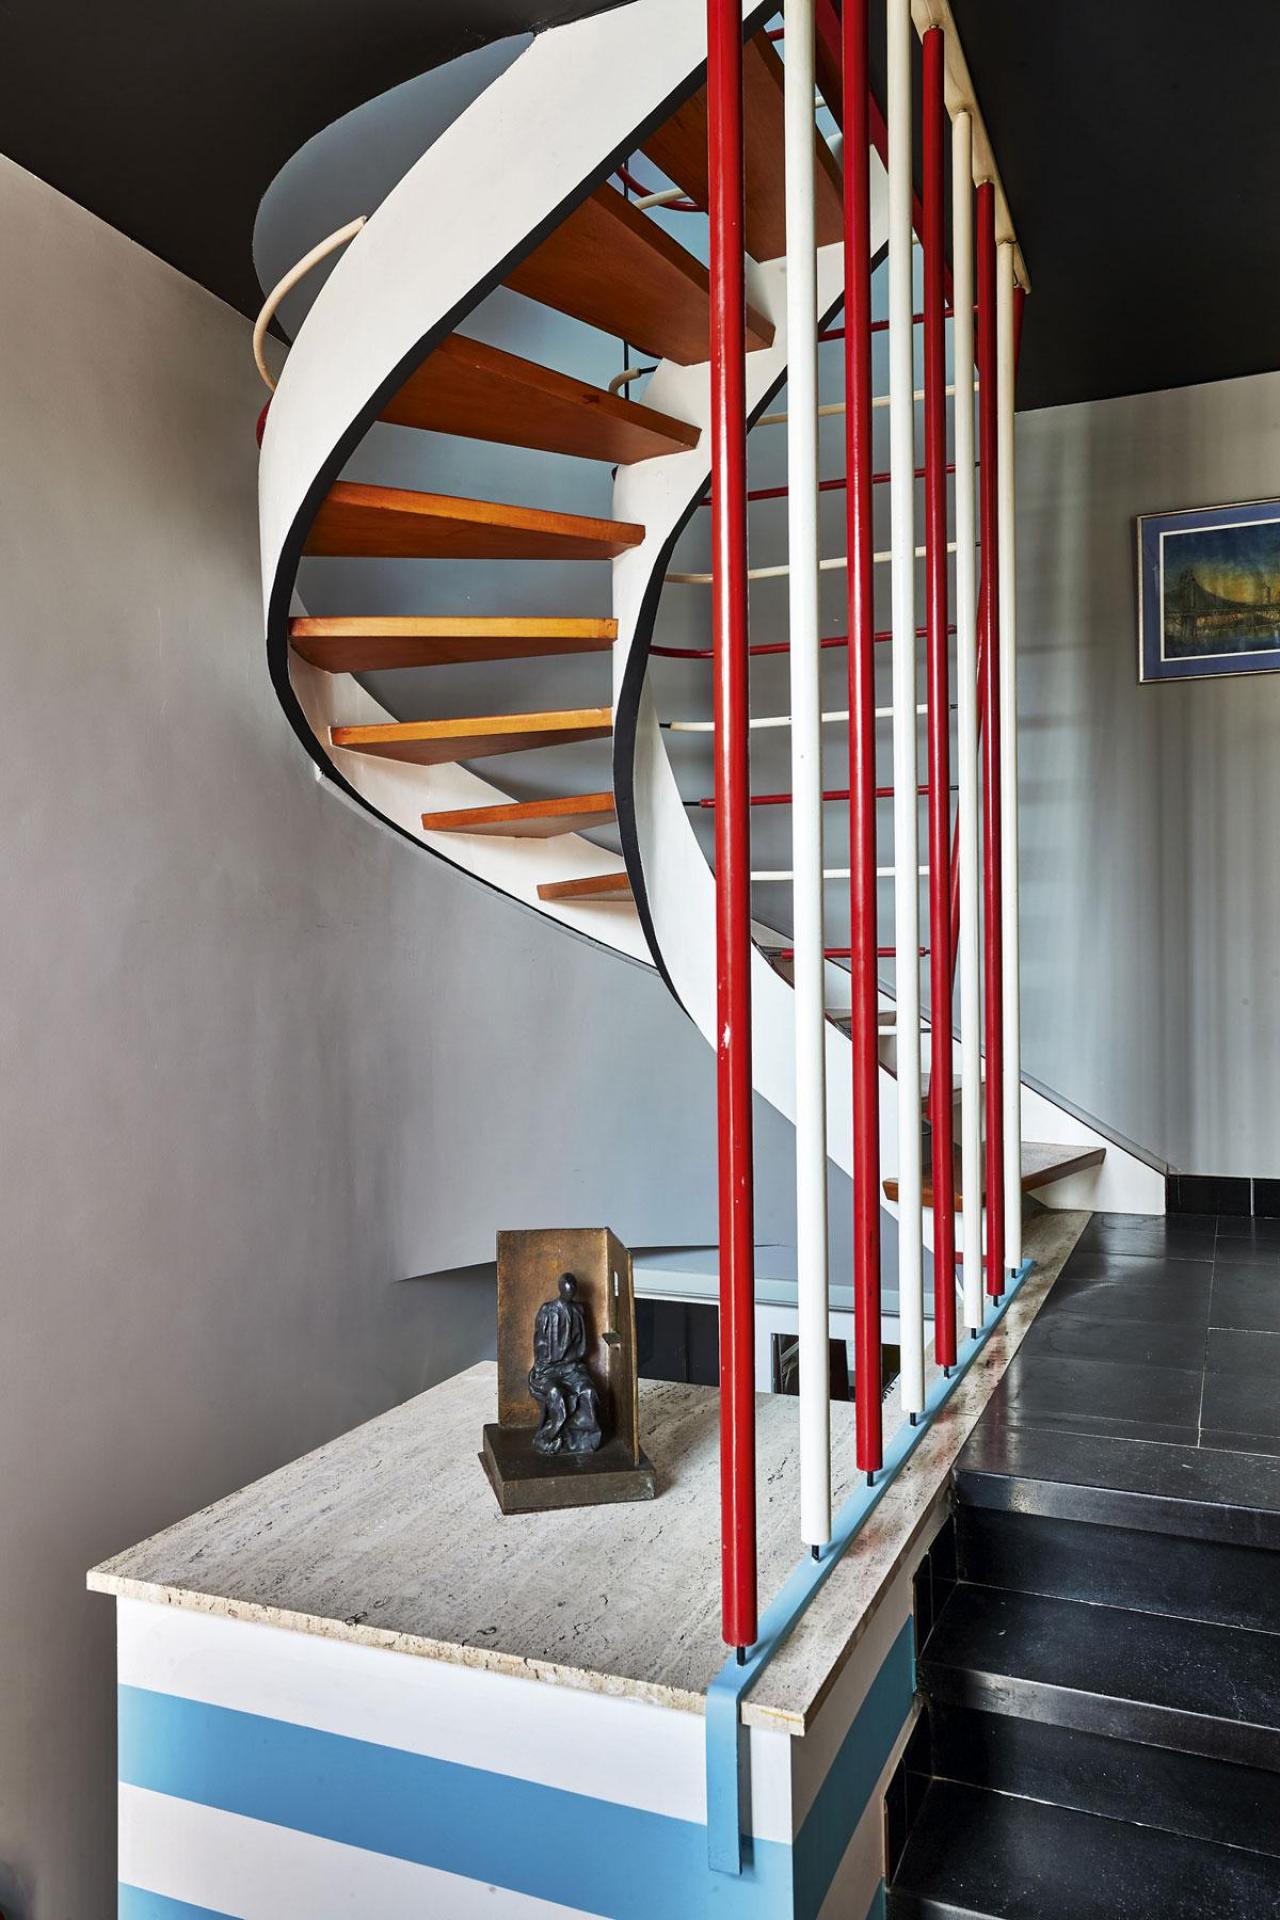 En supprimant le vitrage des châssis, Luc Engels a intégré la cuisine au salon. L’escalier en colimaçon ouvert était une marque de fabrique de l’architecte.